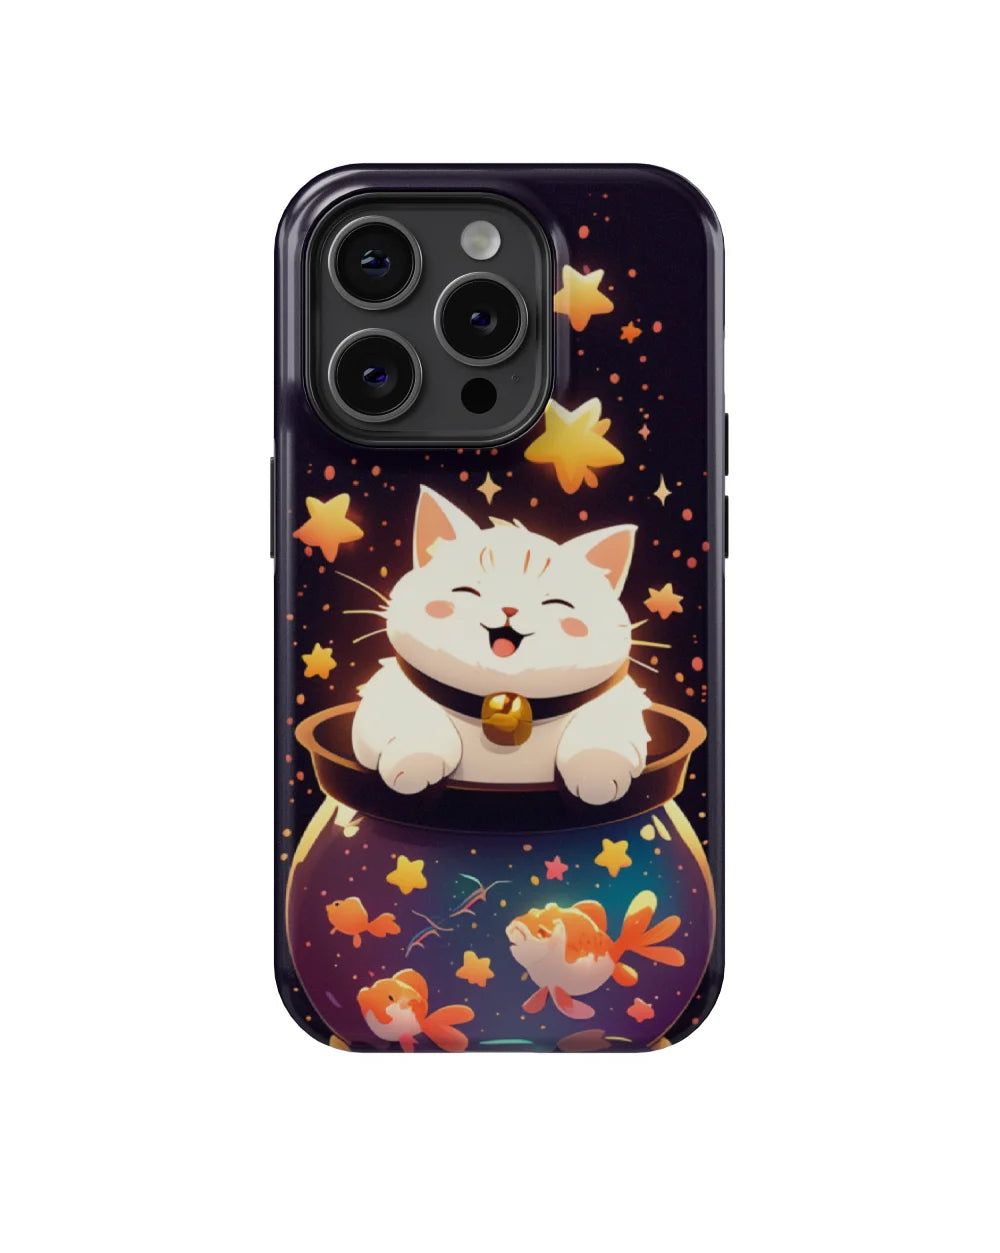 In Fishbowl: Cute Cat Phone Case